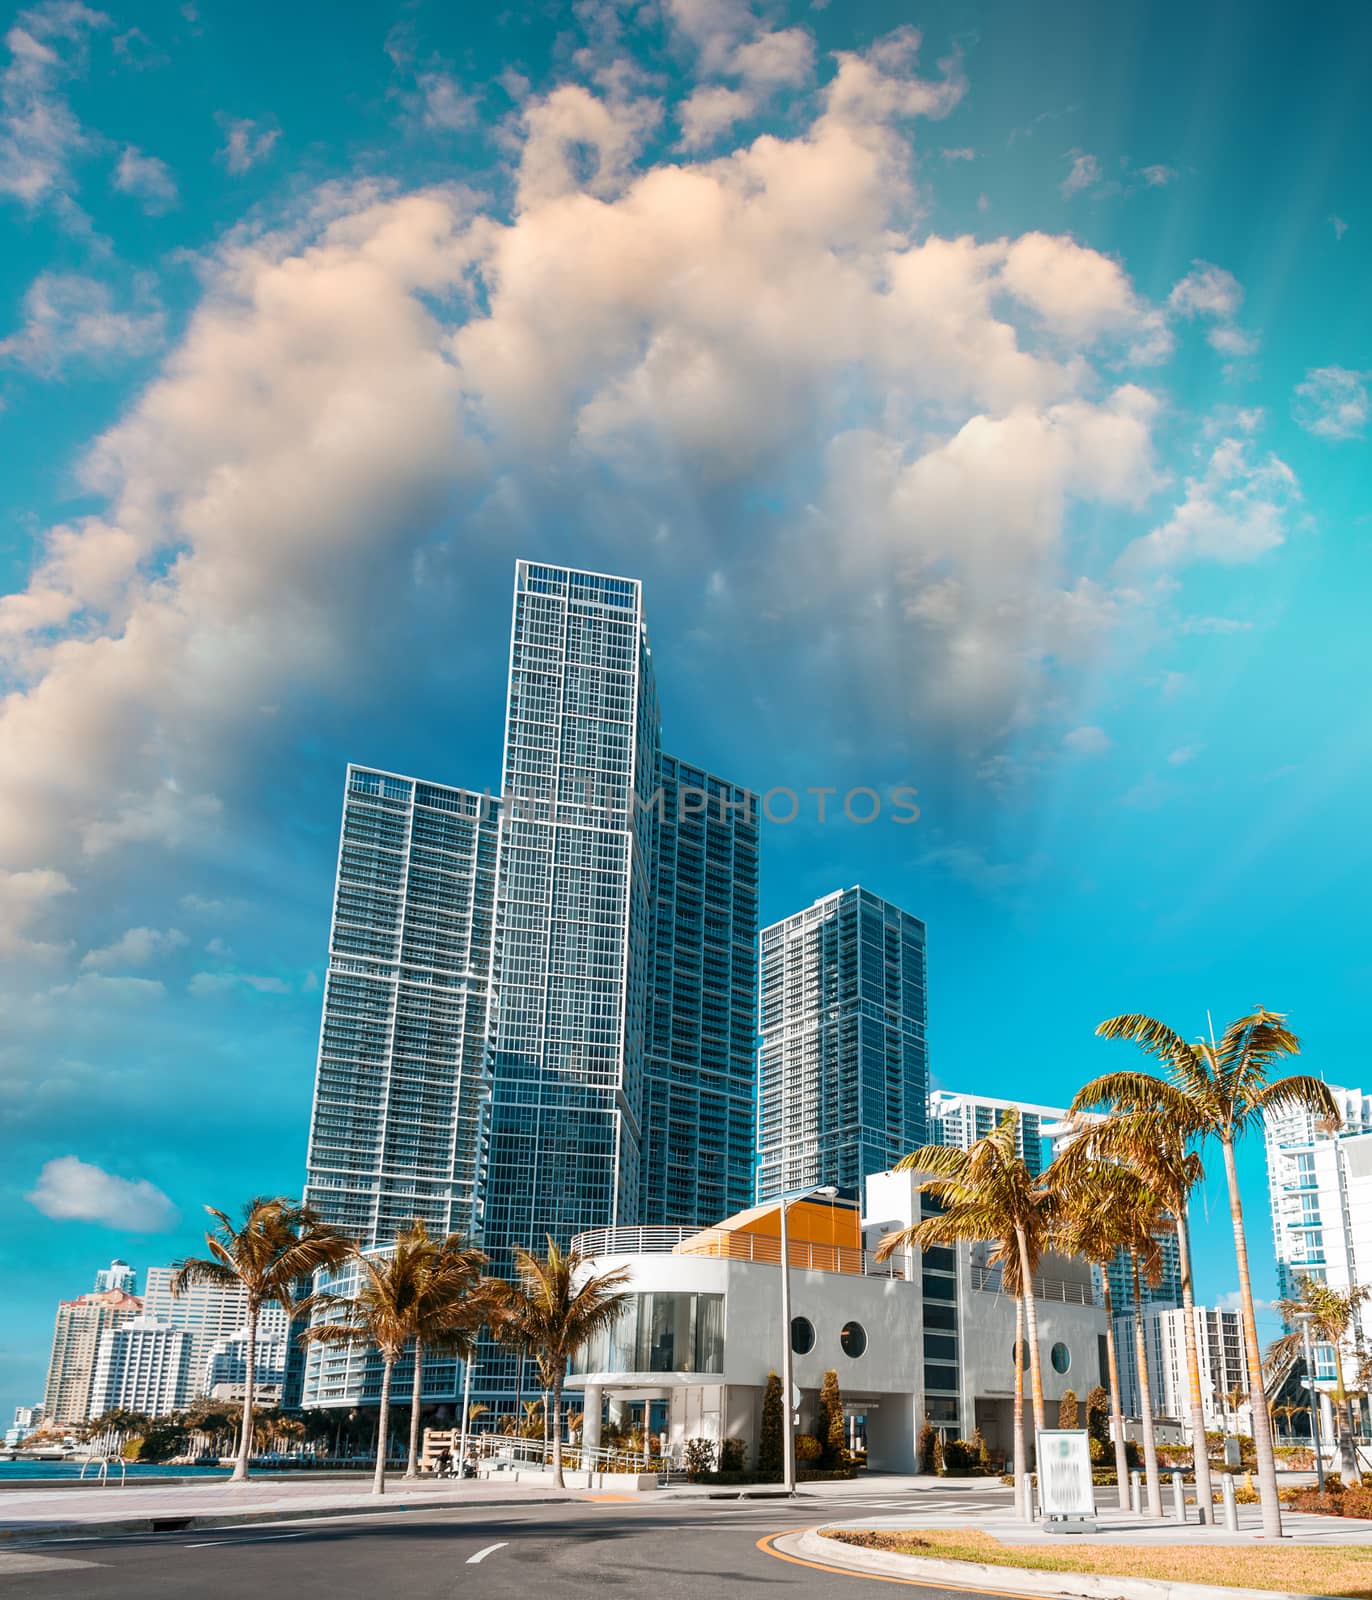 Sunny roads of Miami, Florida, USA.